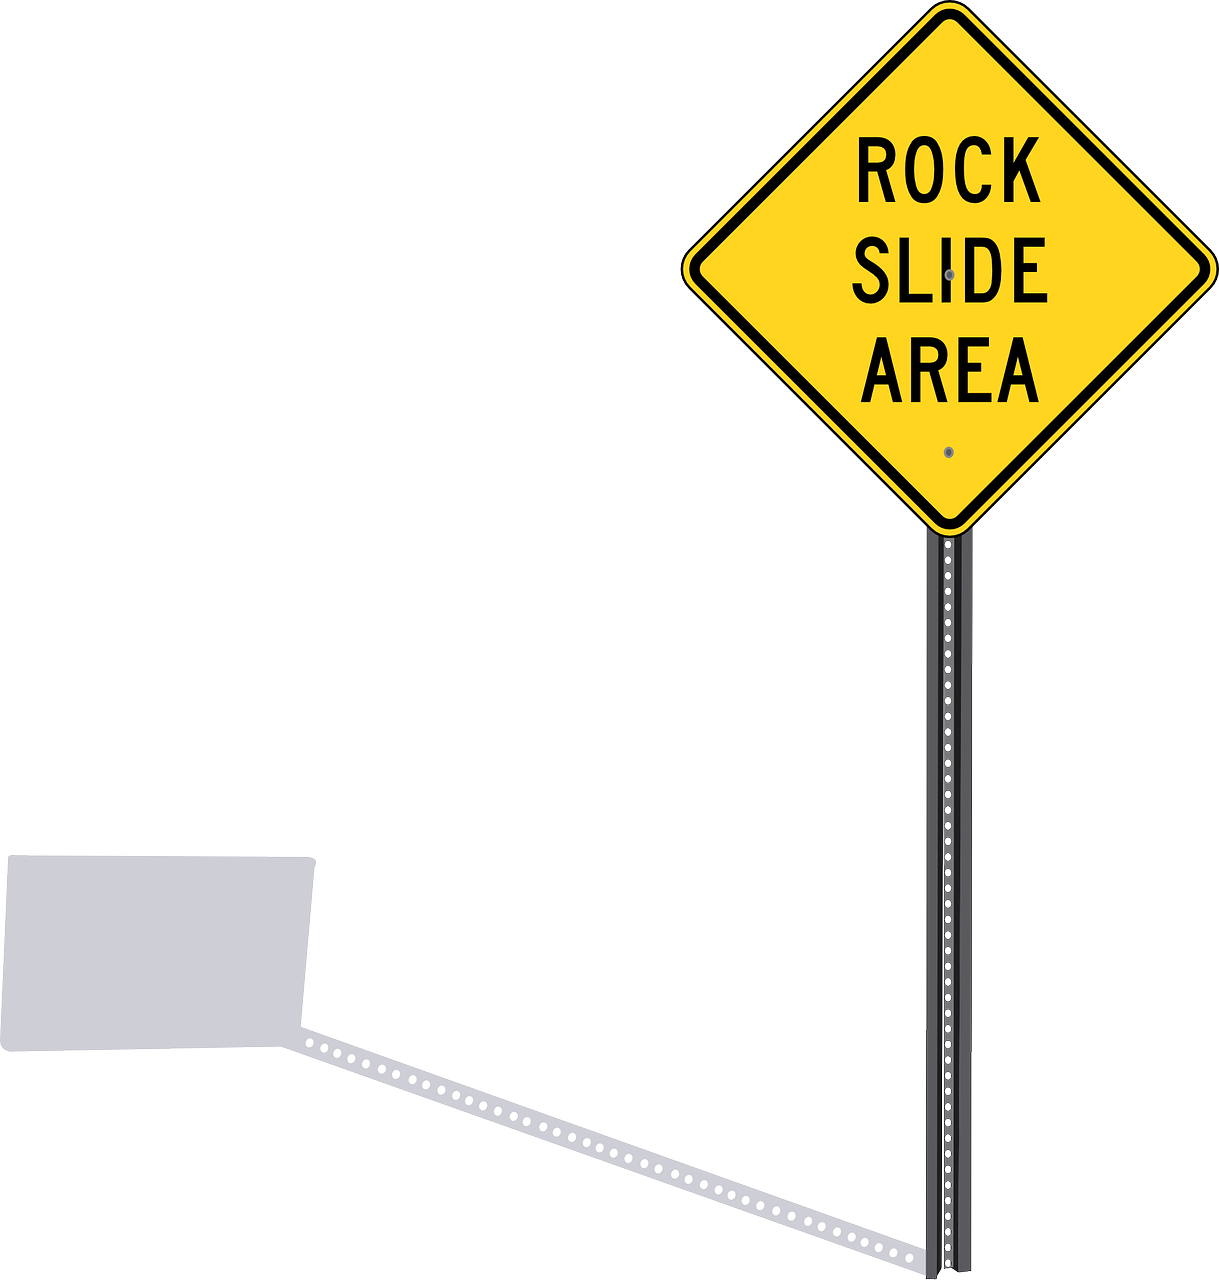 Rock Slide Area Sign PNG